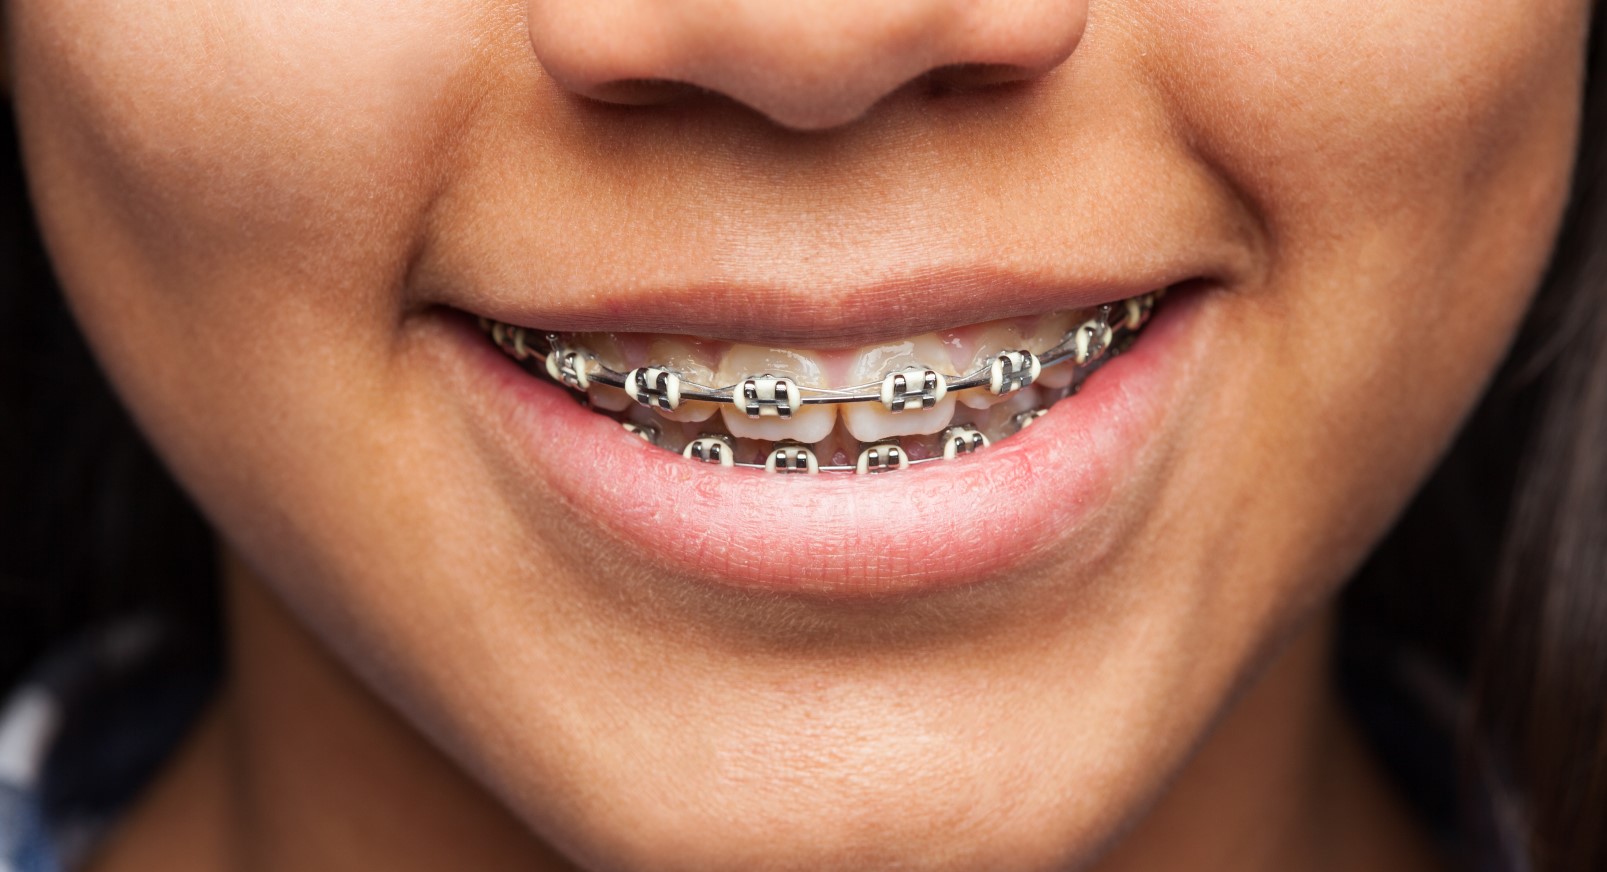 ¿Qué tipo de ortodoncia me conviene más?